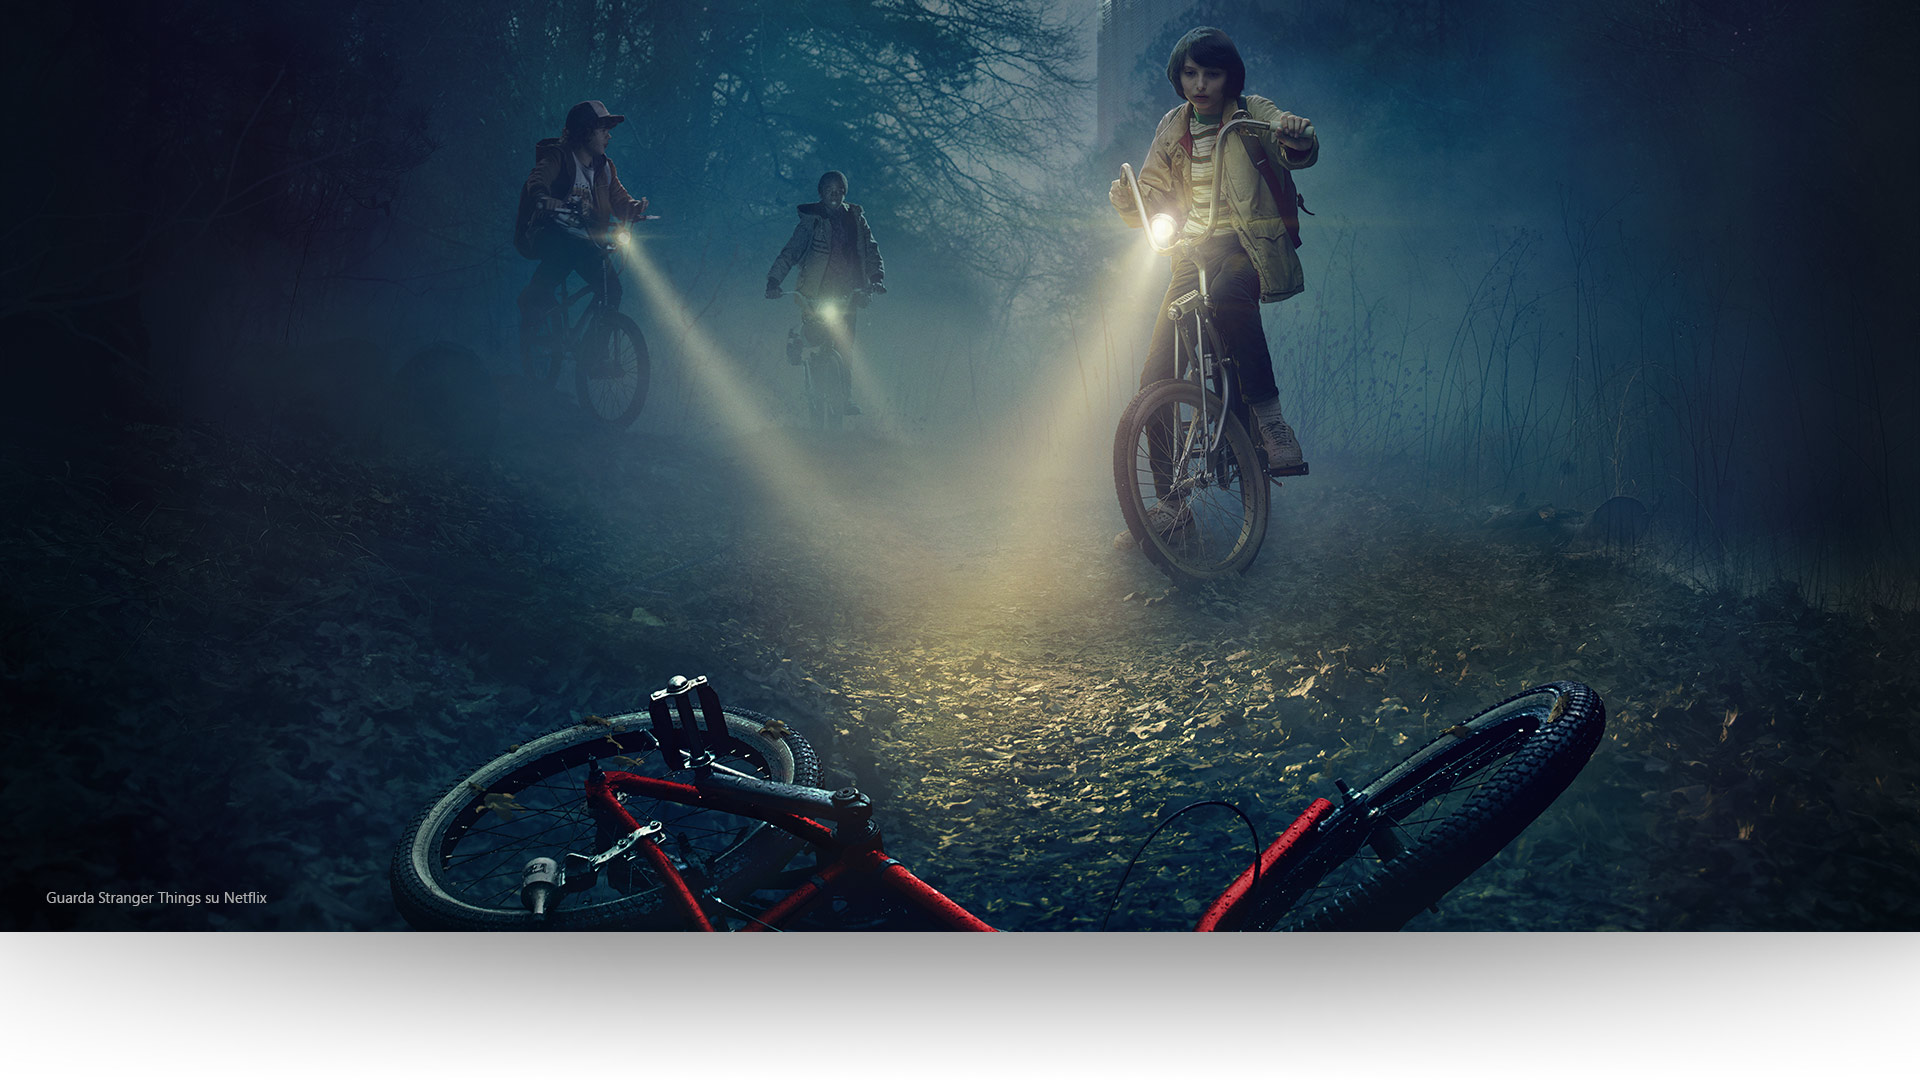 Stranger Things: Dustin, Lucas e Mike puntano le loro torce su una bicicletta abbandonata lungo un lugubre sentiero nel bosco. Guarda Stranger Things su Netflix.